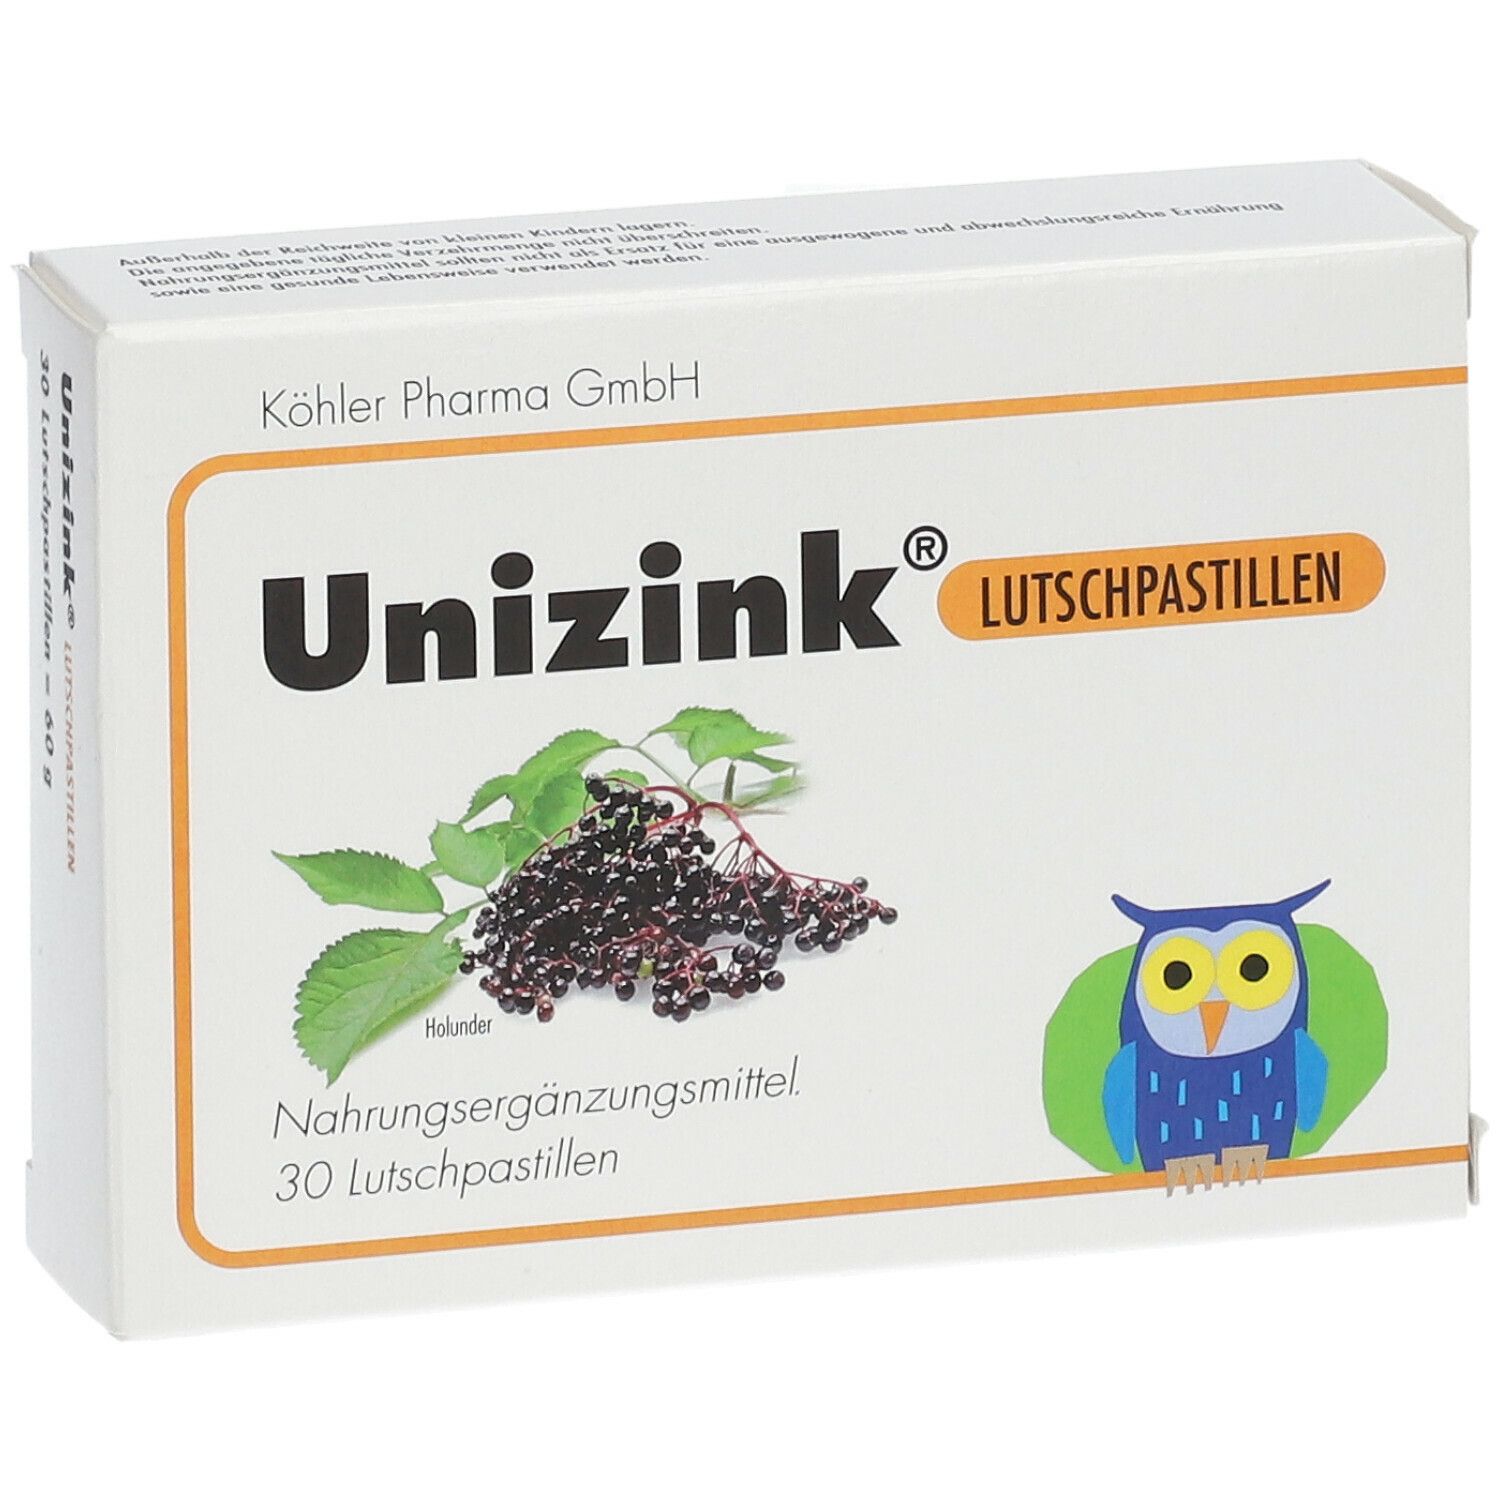 Unizink® Lutschpastillen